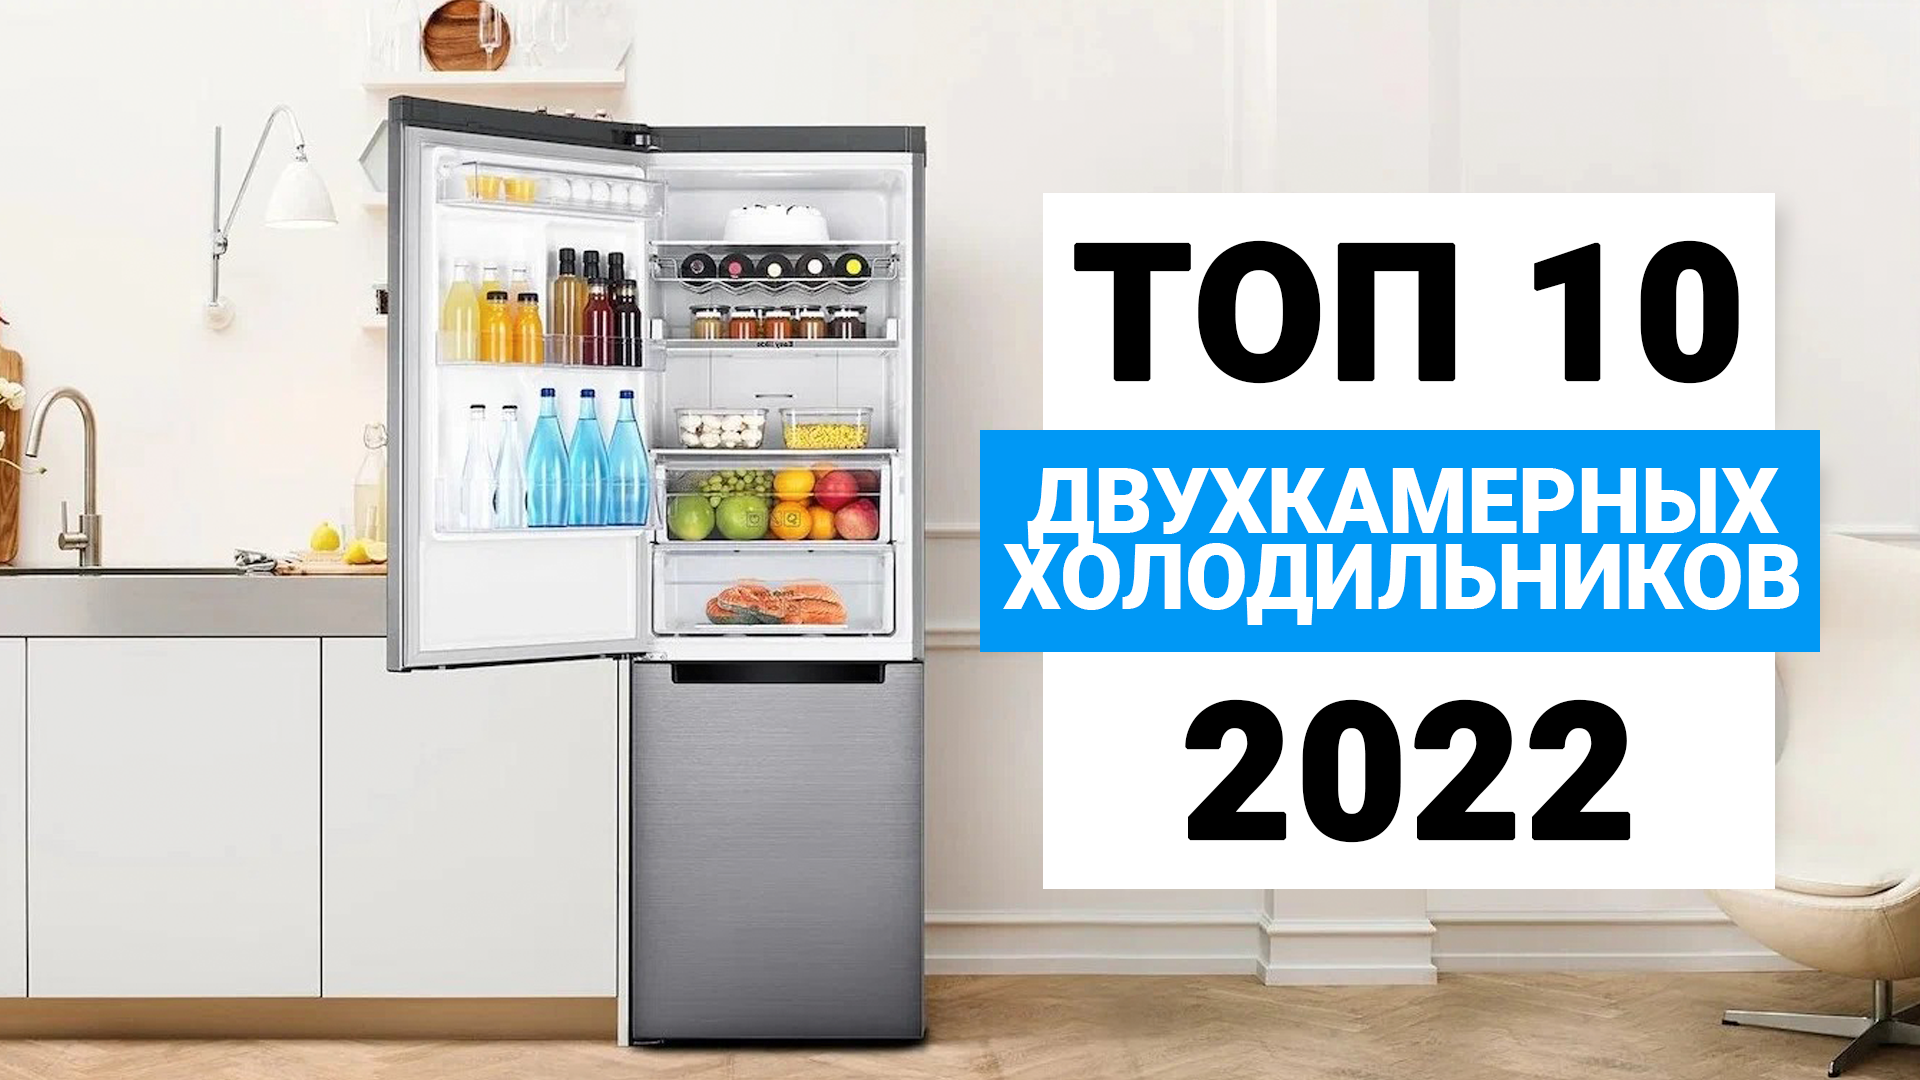 Когда день холодильника в 2022.